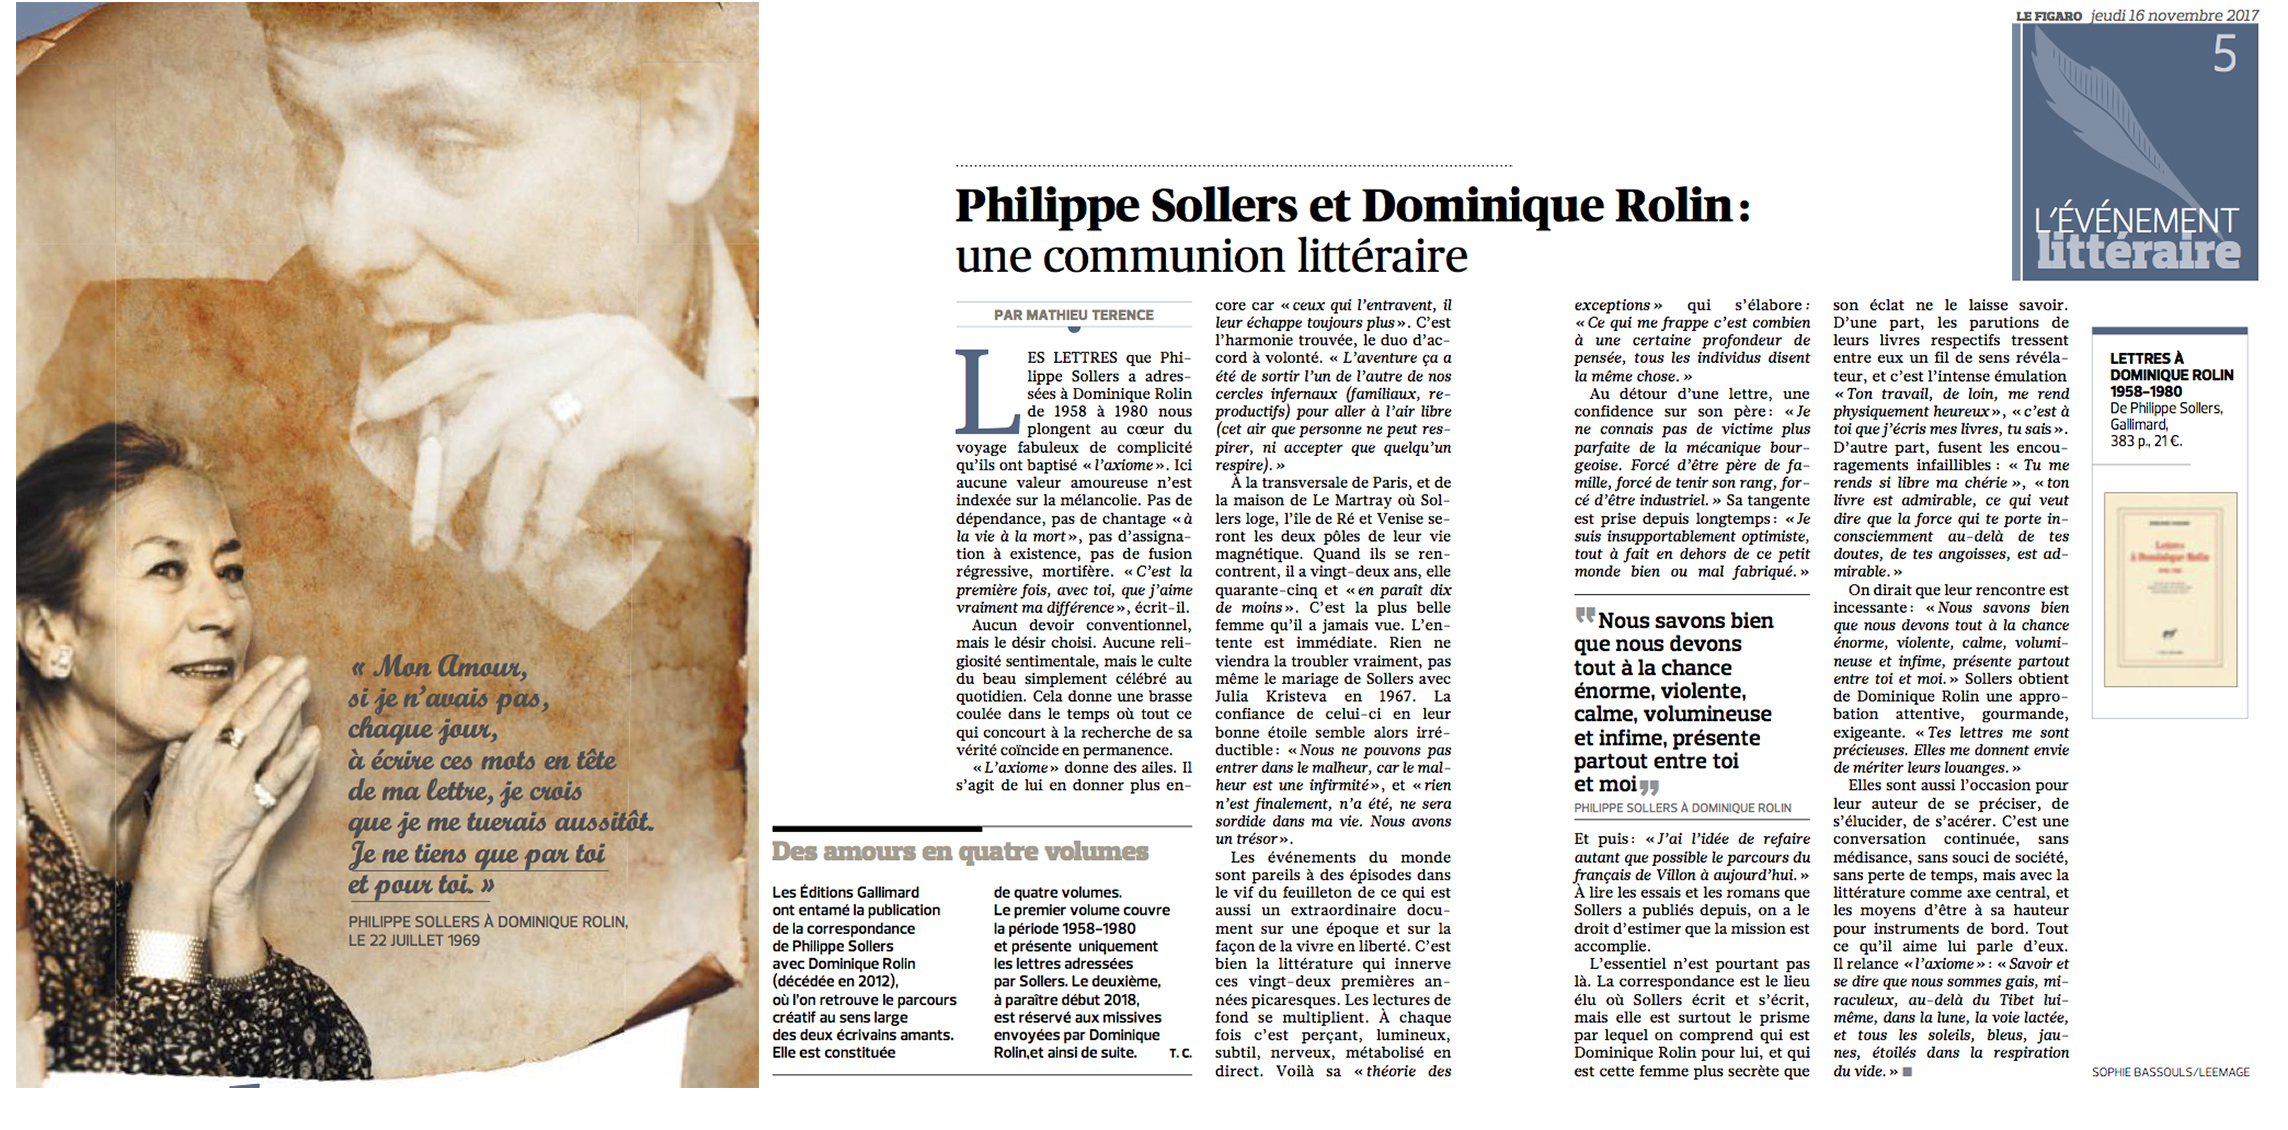   Philippe Sollers et Dominique Rolin: une communion littraire 